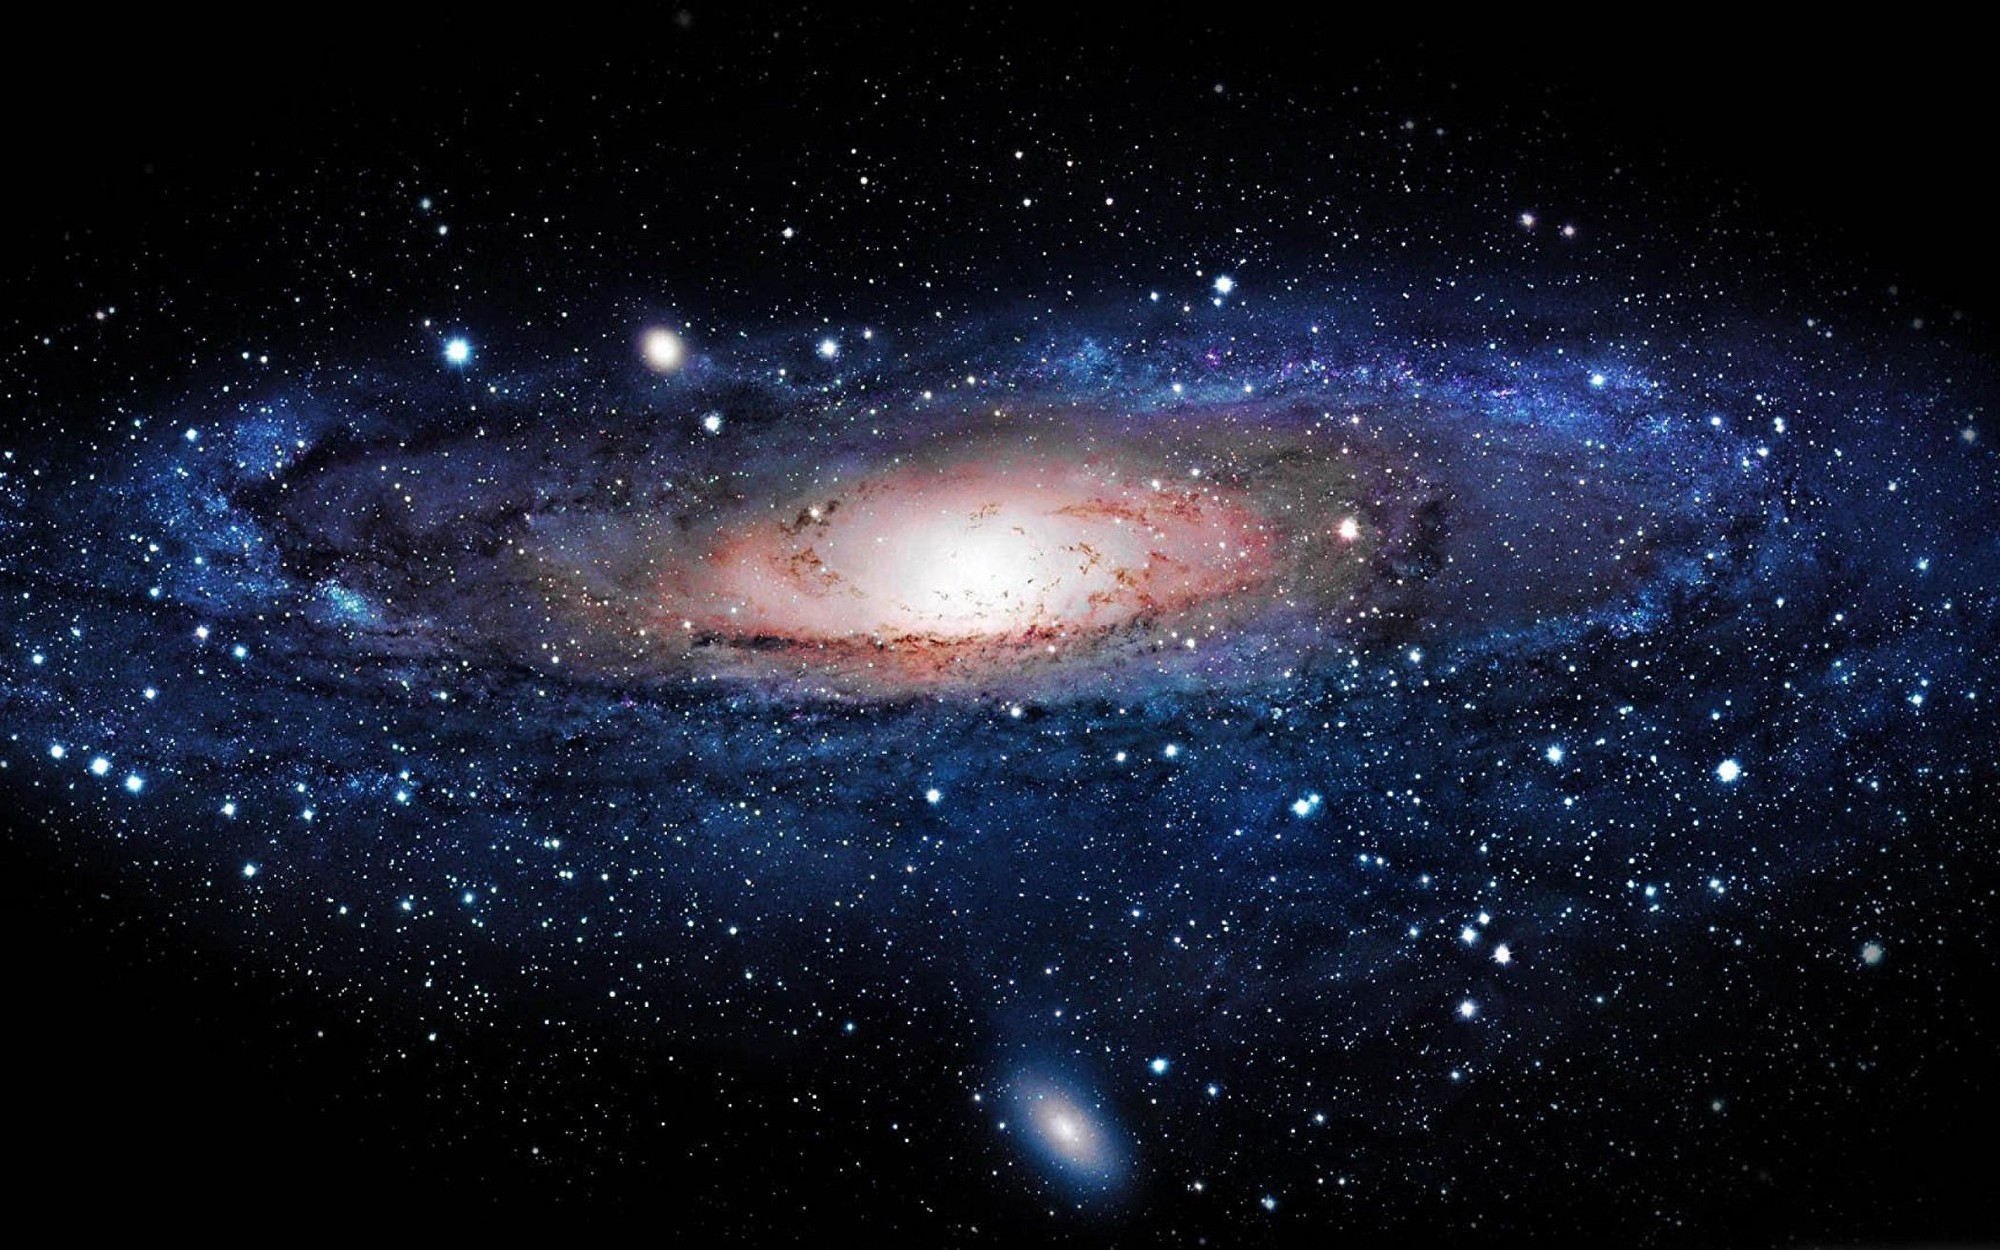 銀河中心怪現象或是新型黑洞證據| 銀河系| 大紀元